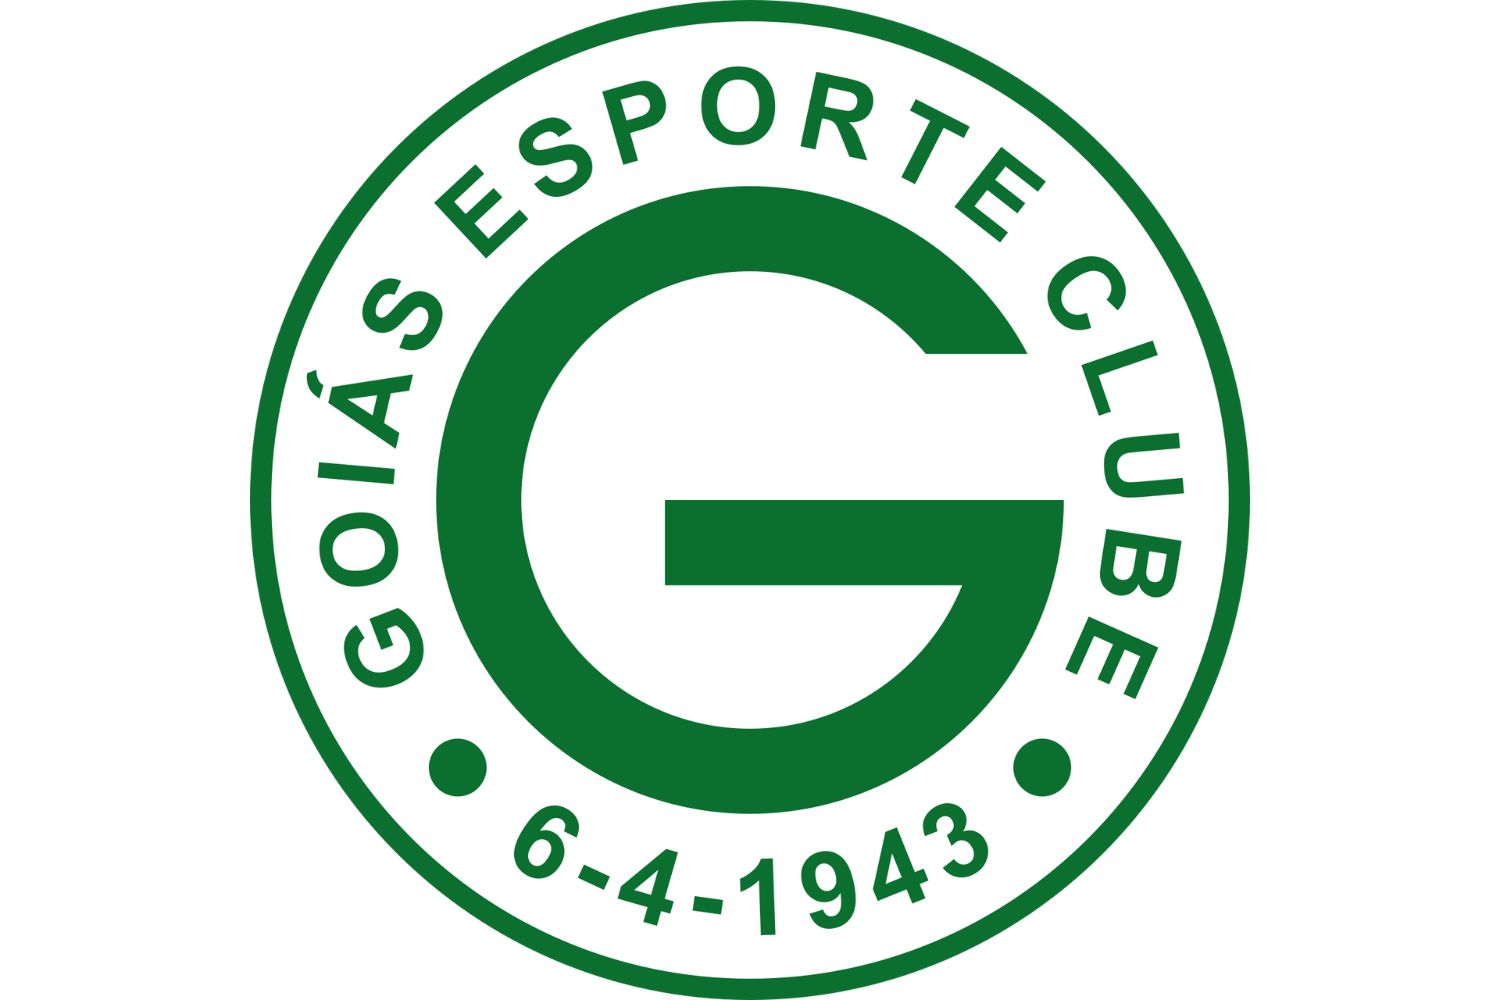 goias-esporte-clube-12-football-club-facts